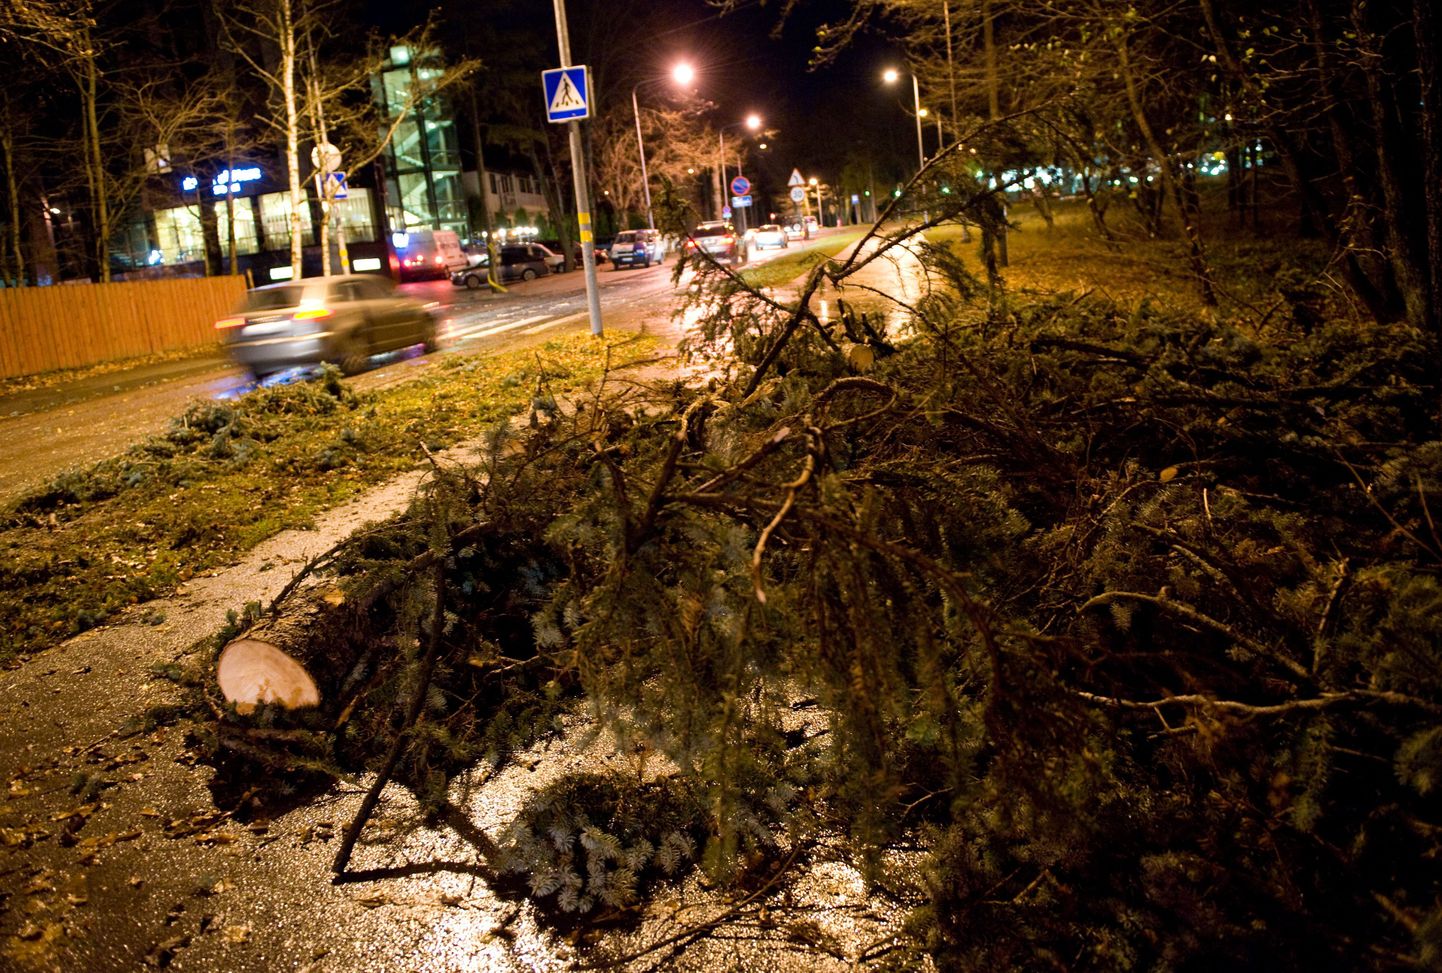 Teele kukkunud puu. Foto on illustratiivne.